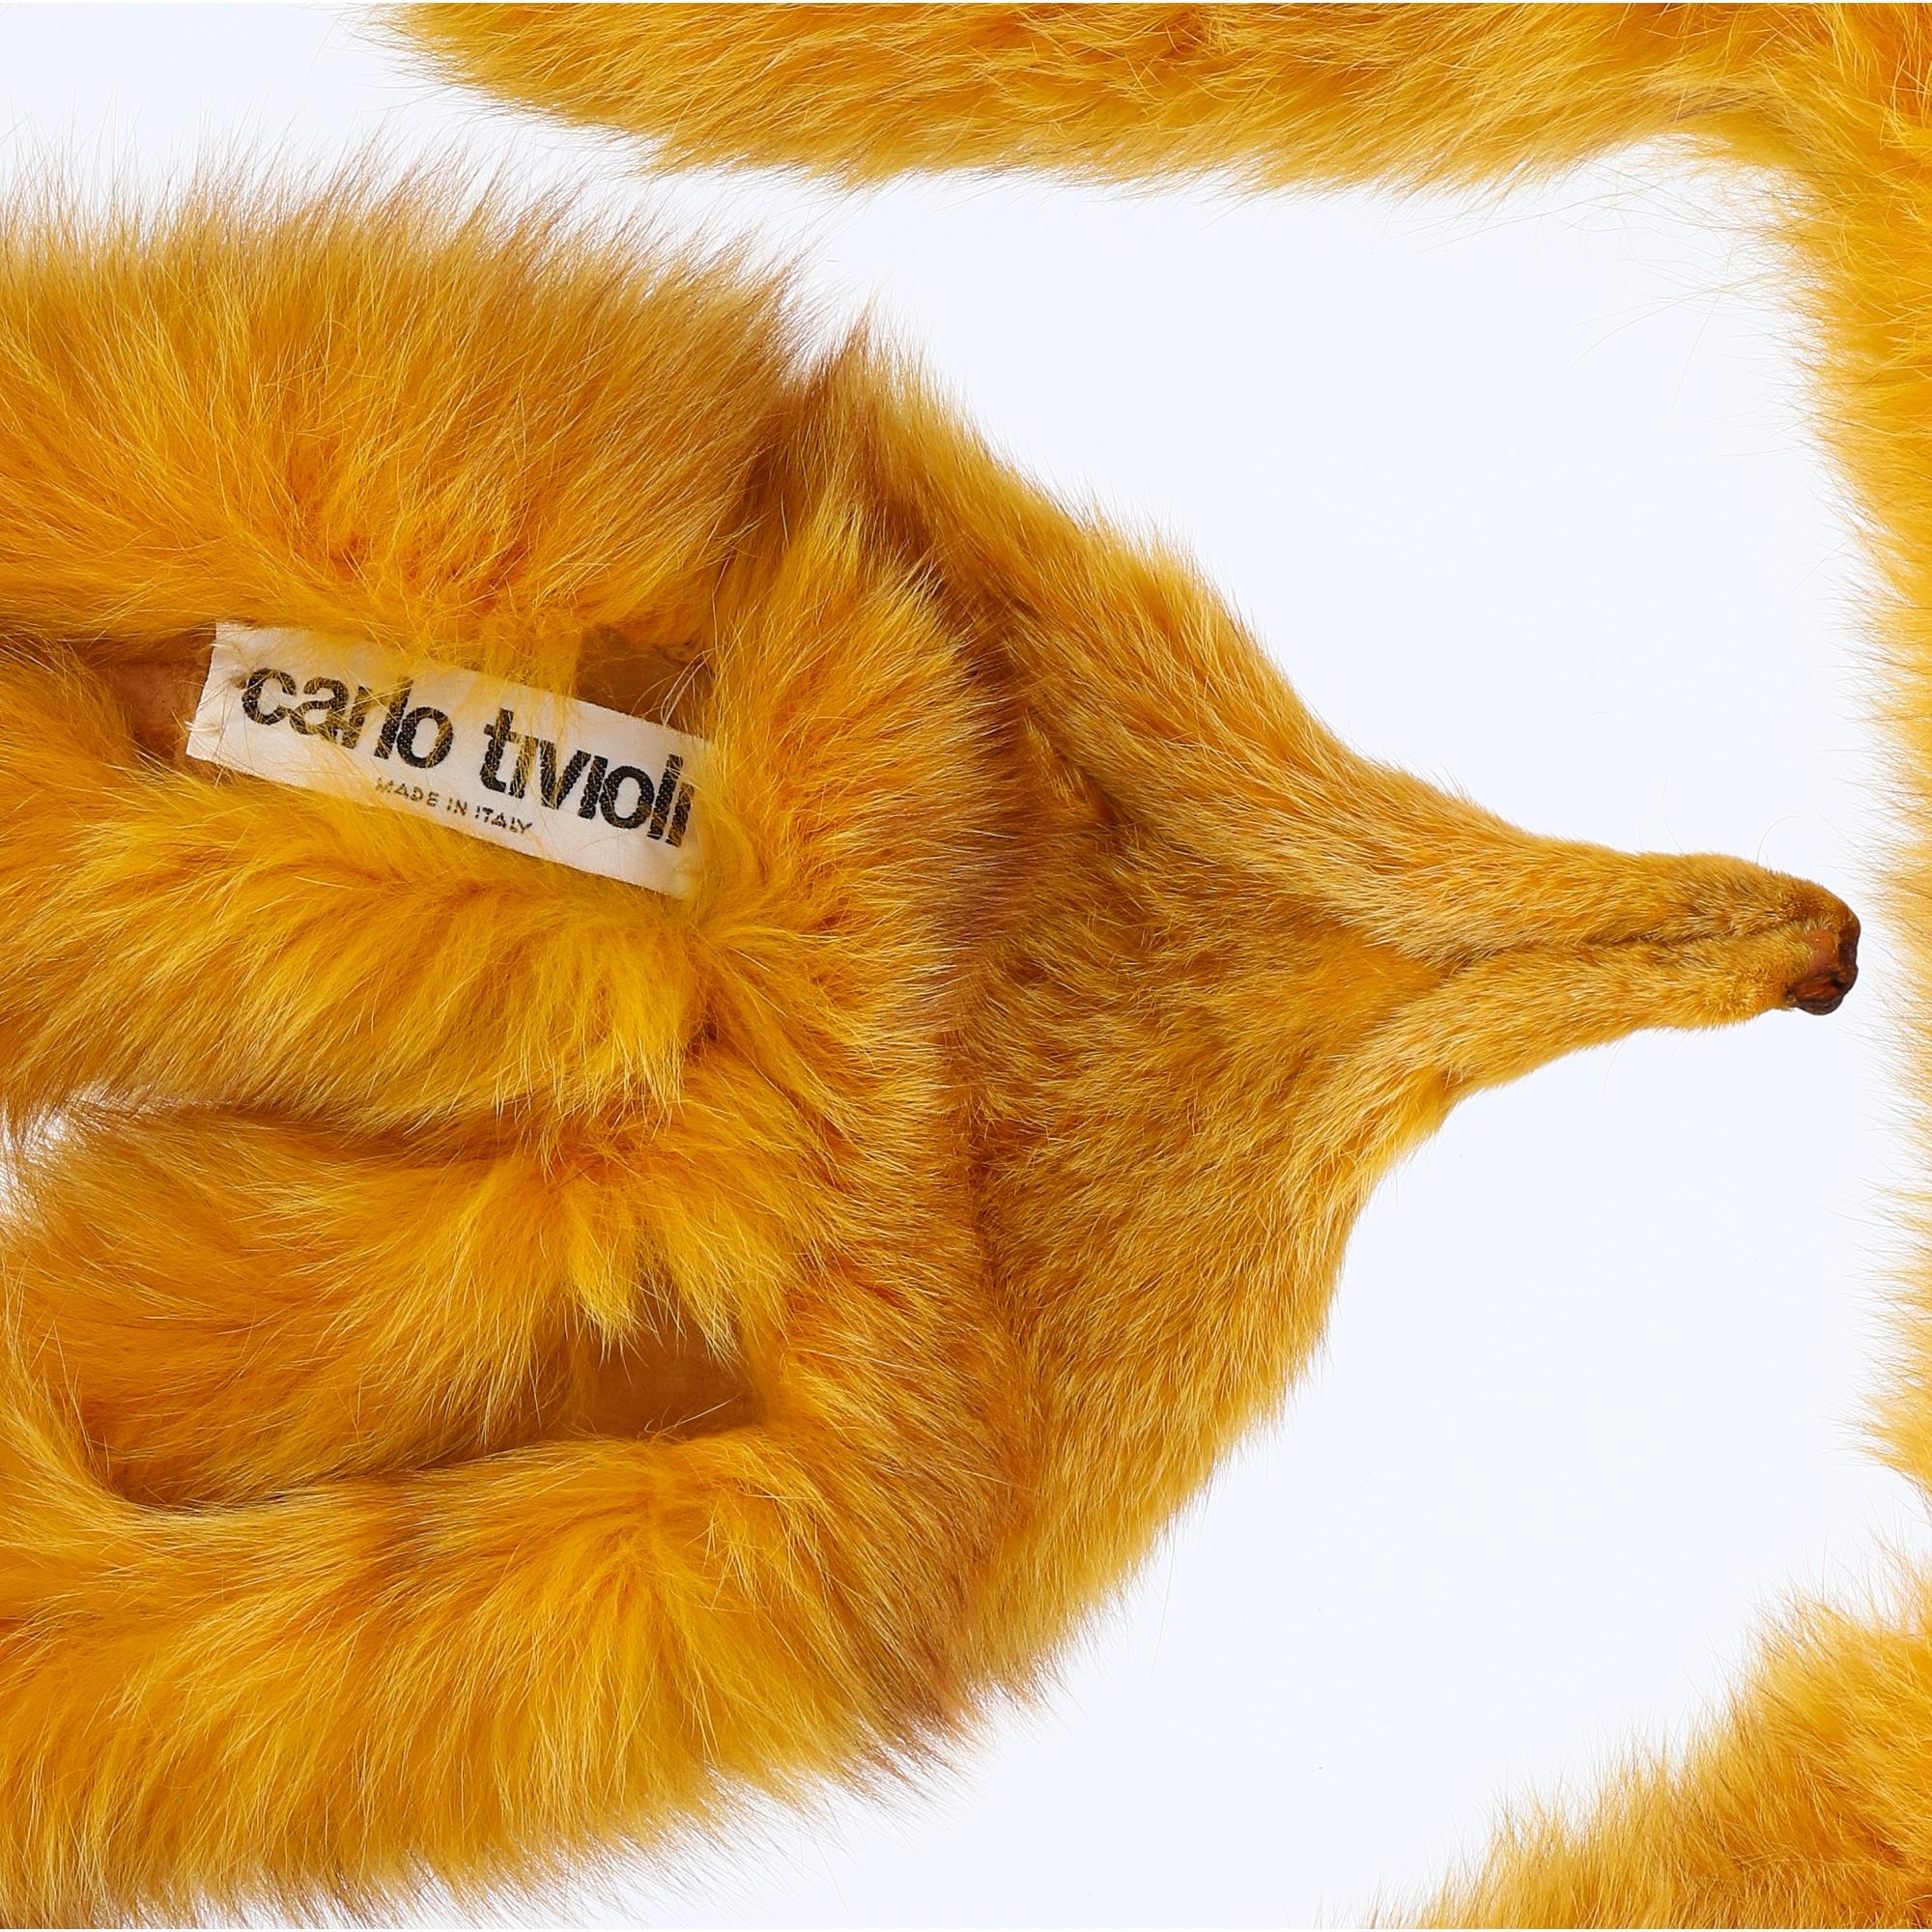 fox scarf